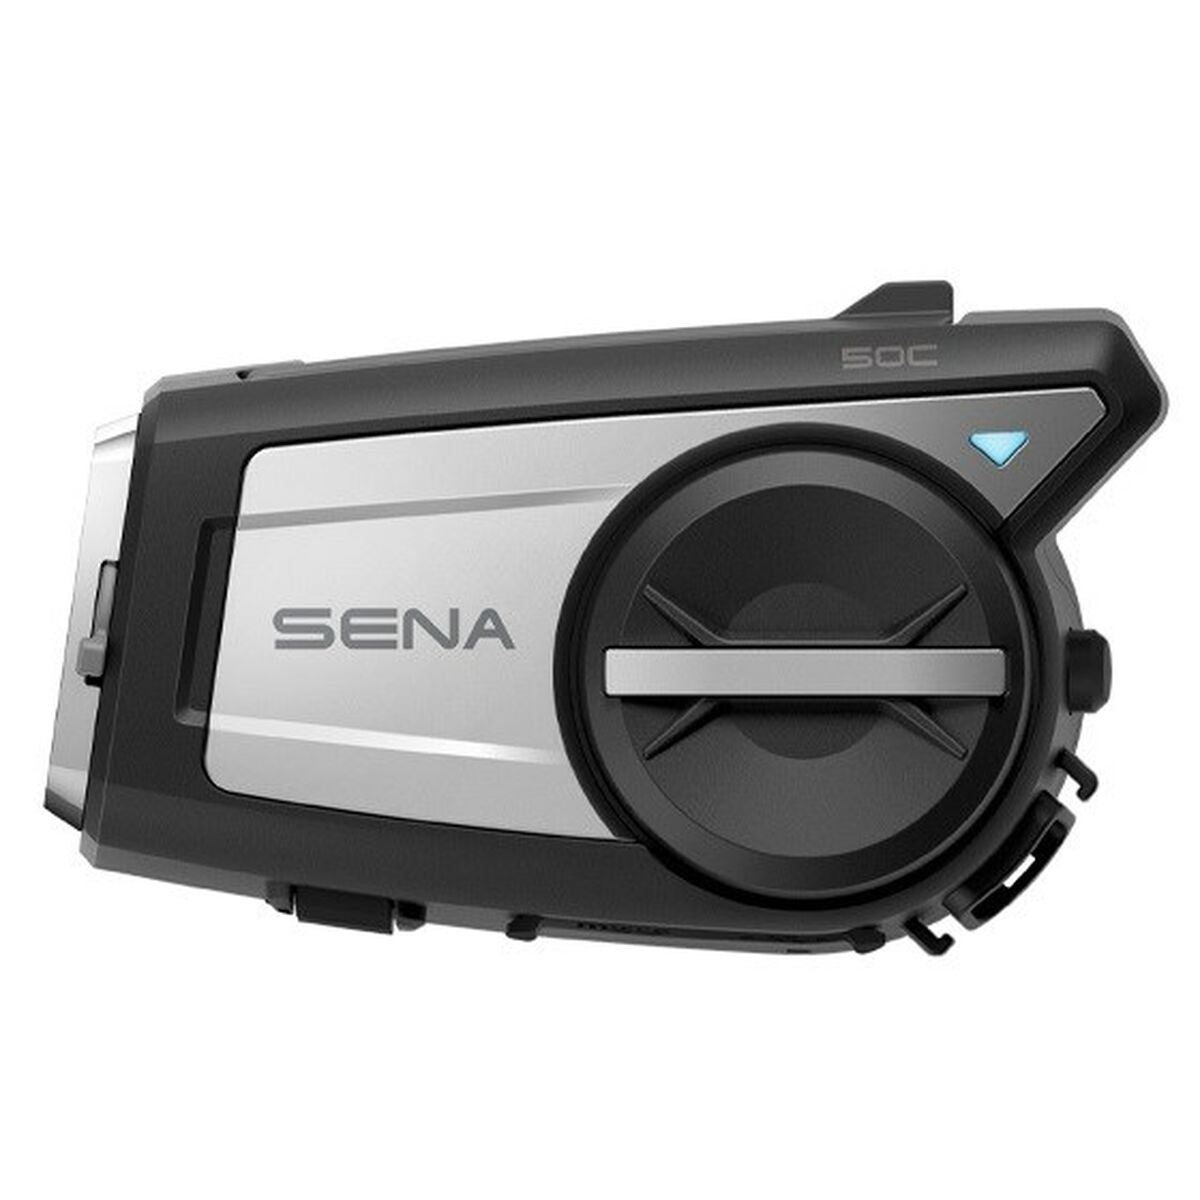 Intercom Sena 50C 50C-01 LED-scherm